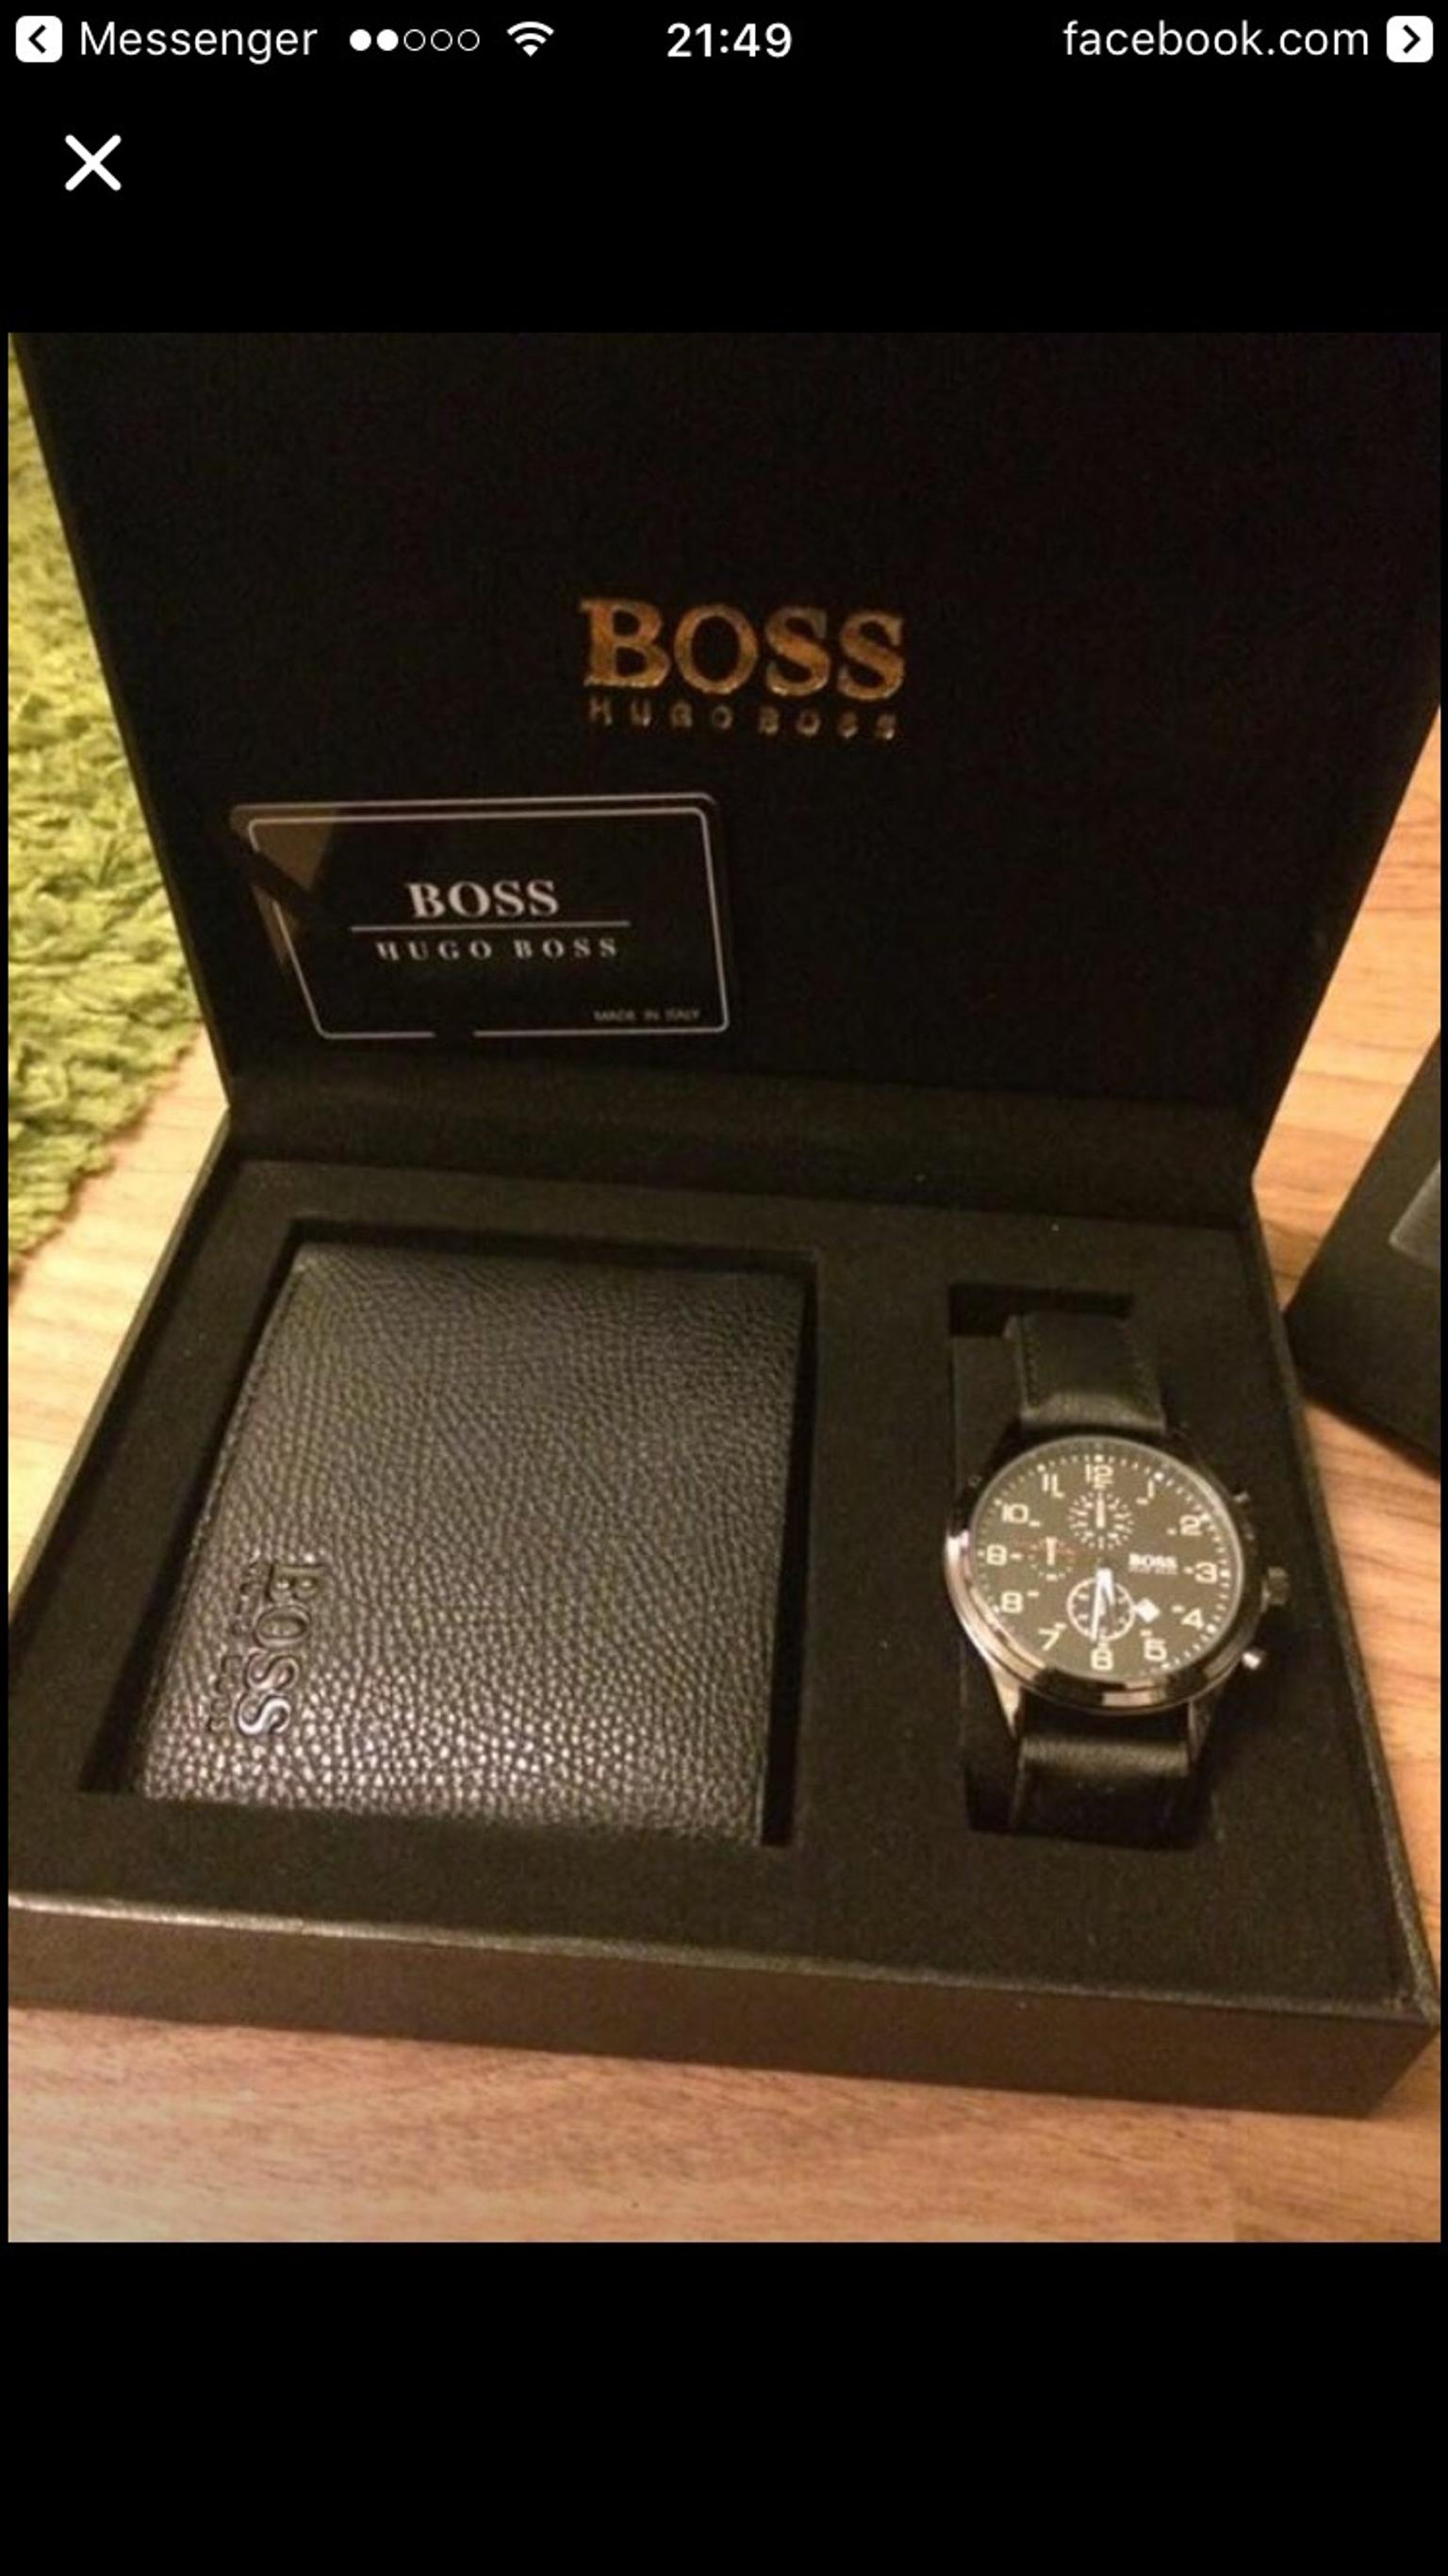 boss watch gift set Online shopping has 